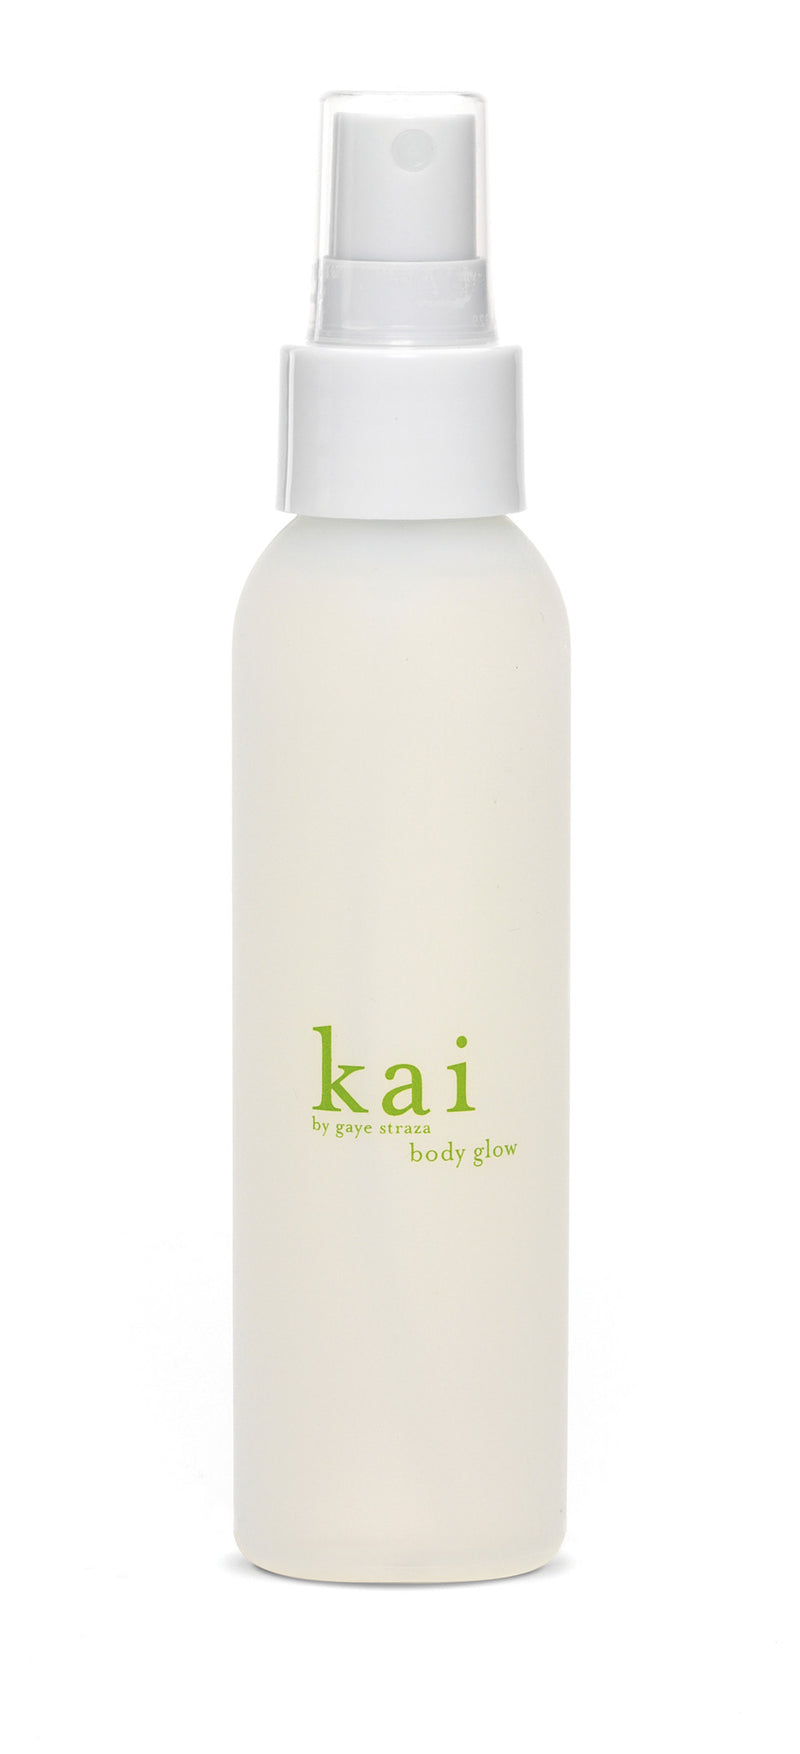 media image for kai body glow design by kai fragrance 1 252